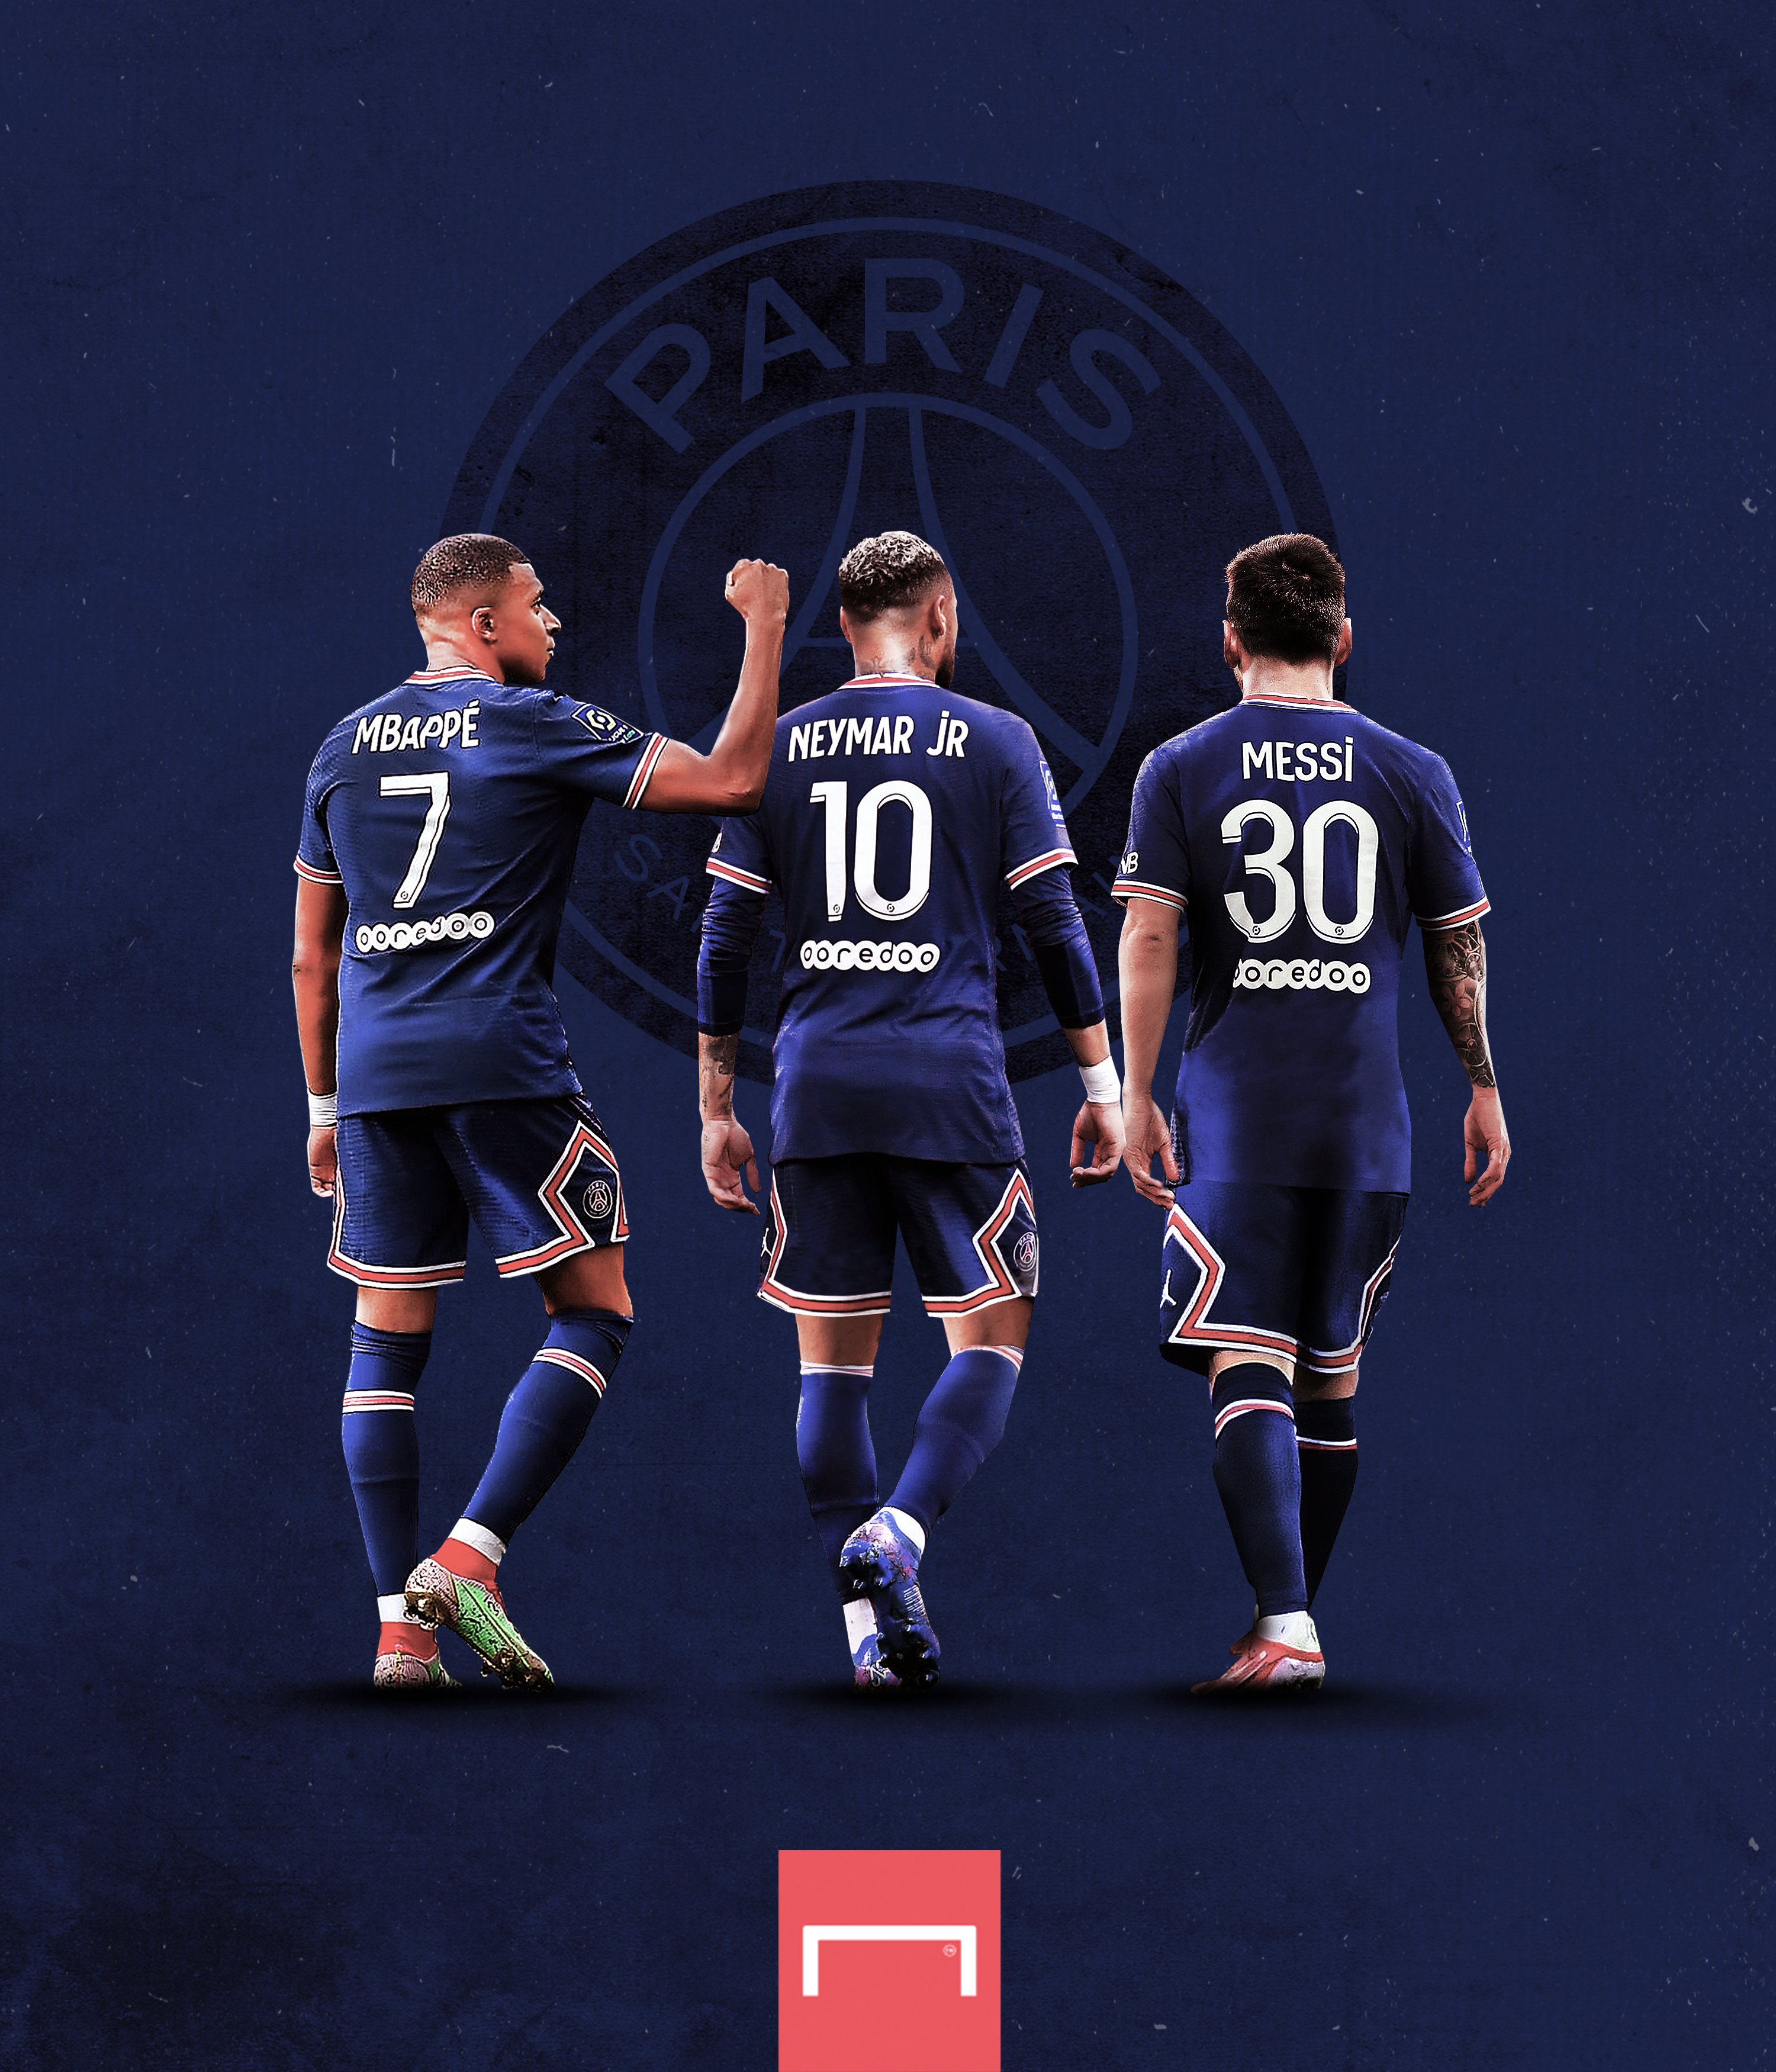 PSG: Paris Saint-Germain là một biểu tượng quốc tế trong làng bóng đá. Những màn trình diễn của họ trong những mùa giải gần đây đã trở thành nguồn cảm hứng và niềm tự hào cho các Fan của đội bóng. Nếu bạn yêu thích PSG, các hình ảnh độc đáo của đội bóng này chắc chắn sẽ khiến bạn xuýt xoa.